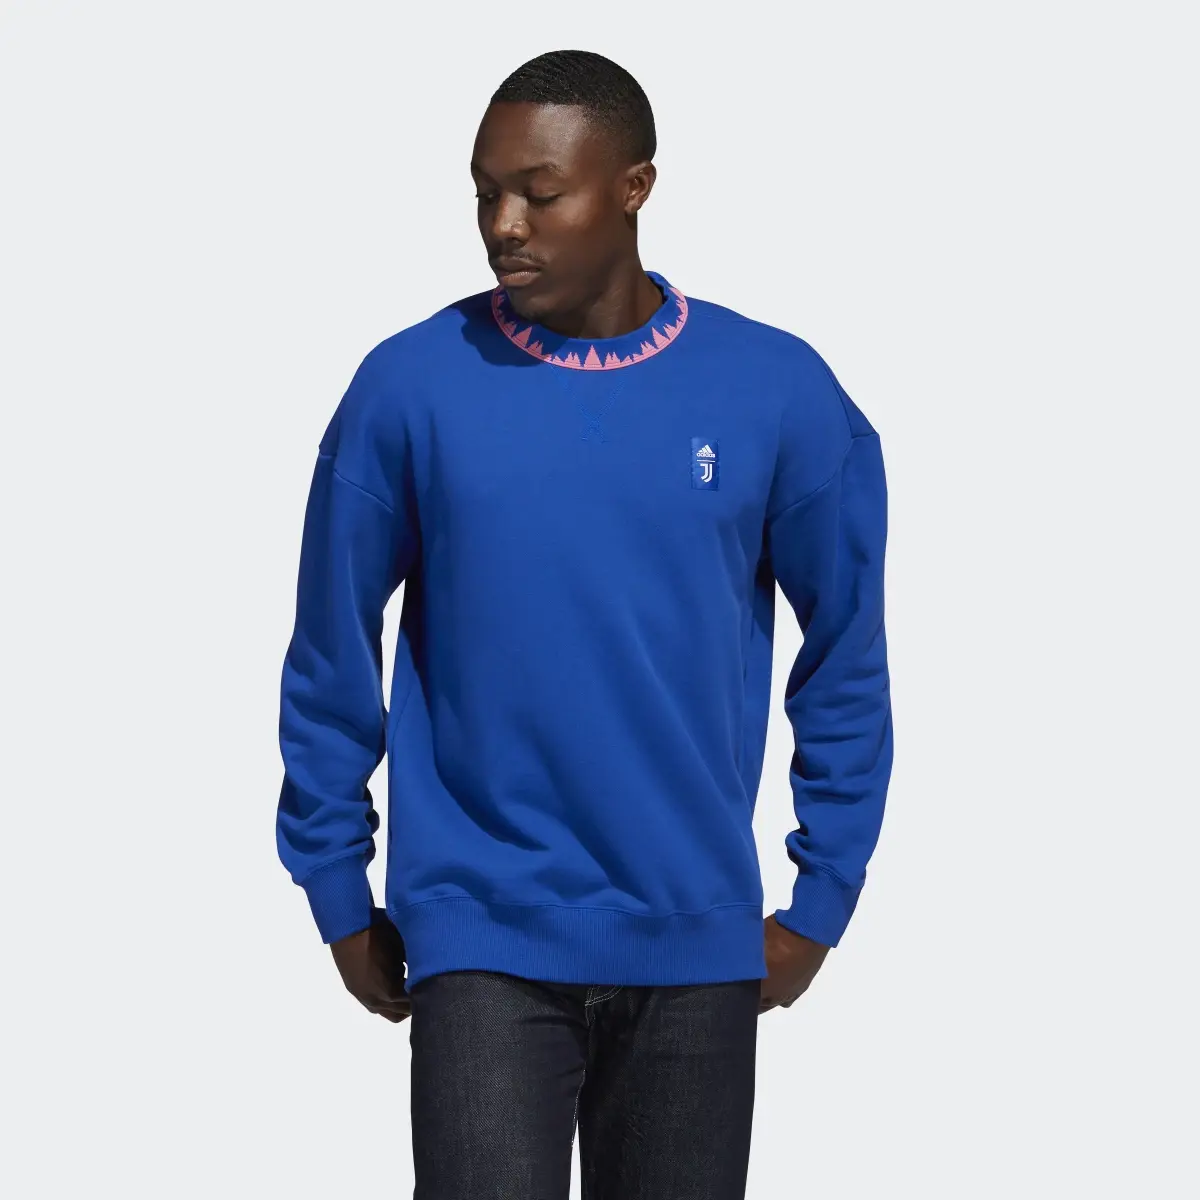 Adidas Sweatshirt Lifestyler da Juventus. 2